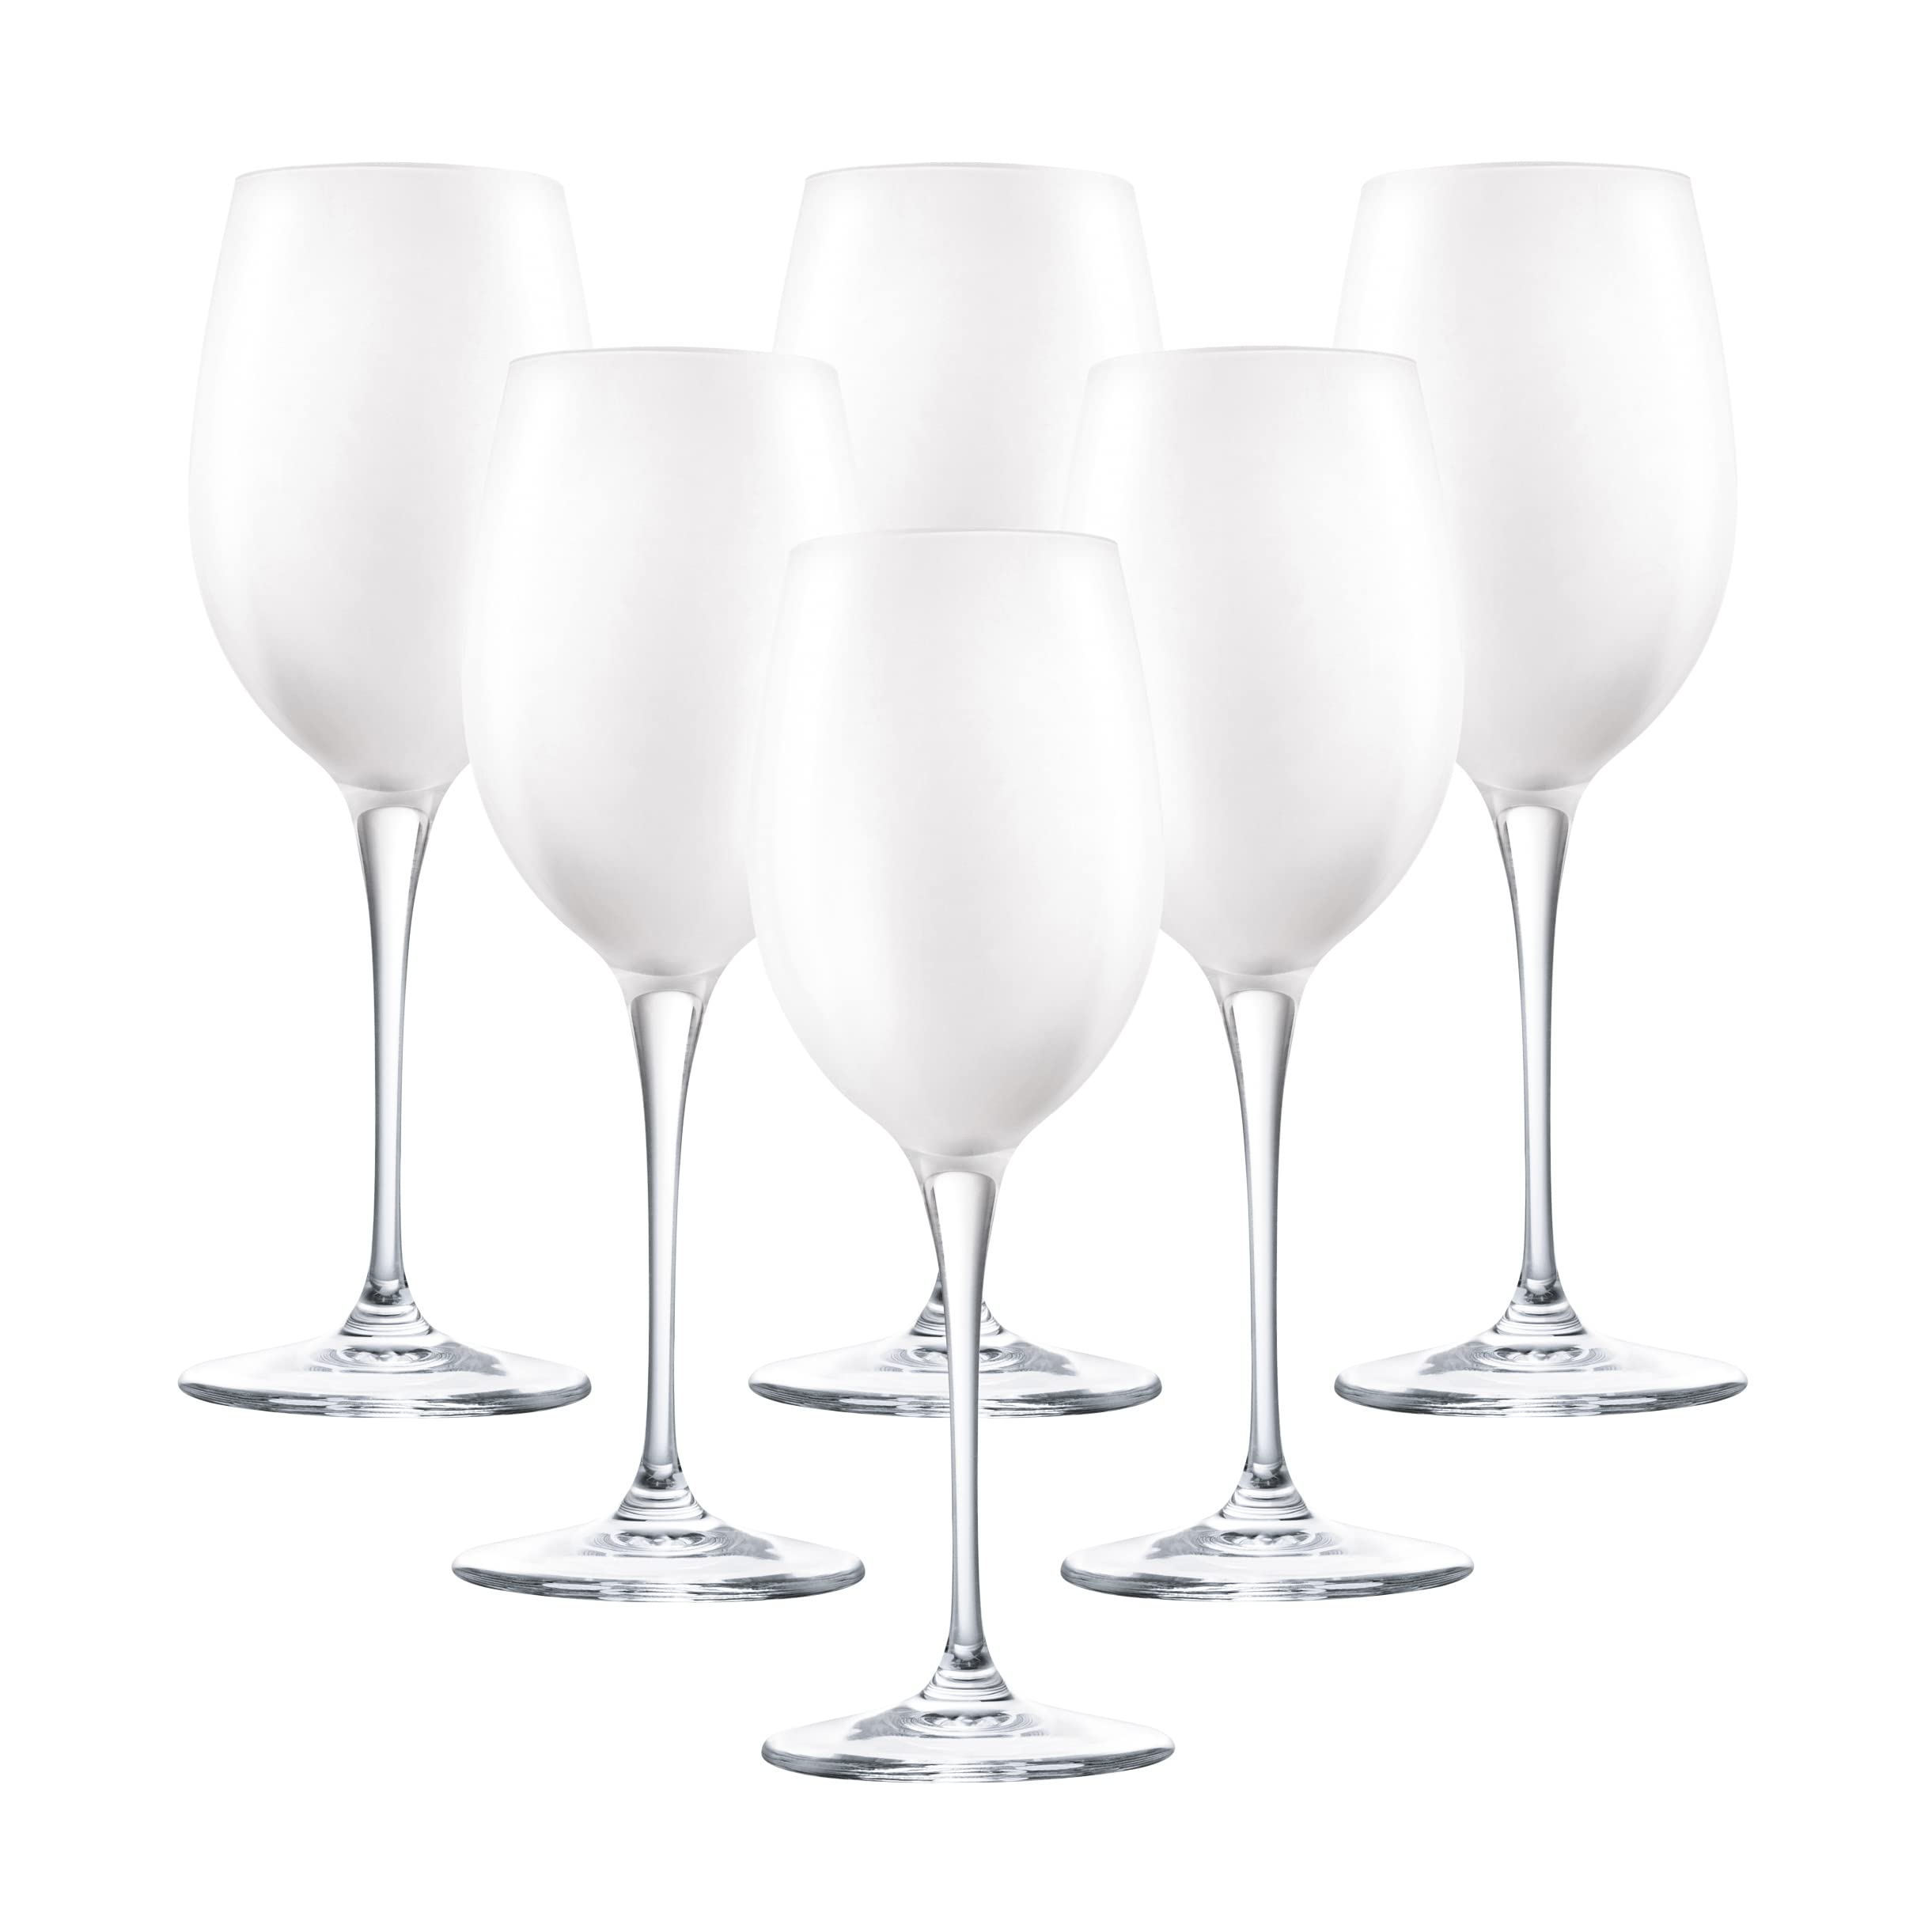 Barski Goblet - White Wine Glass - Crystal Glass - Water Glass - Opal White - Stemmed Glasses - Set of 6 Goblets - 14 oz Made in Europe